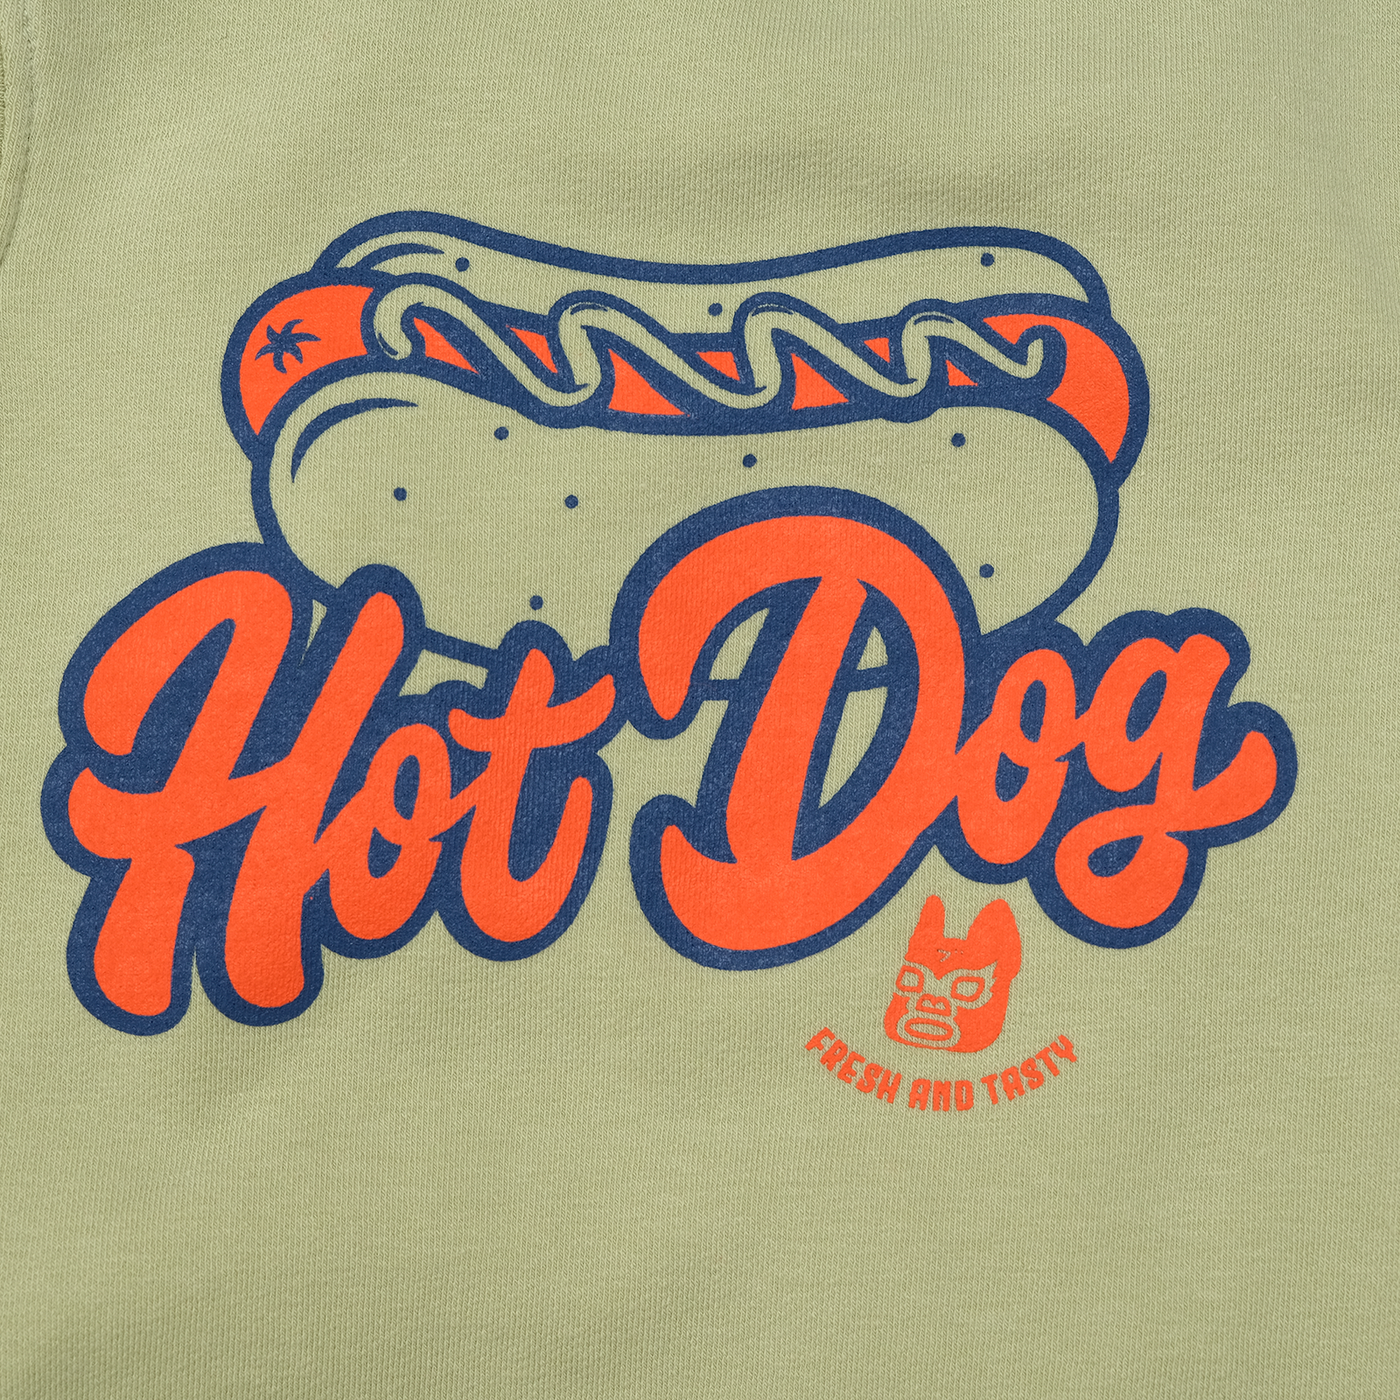 Hot Dog Tank